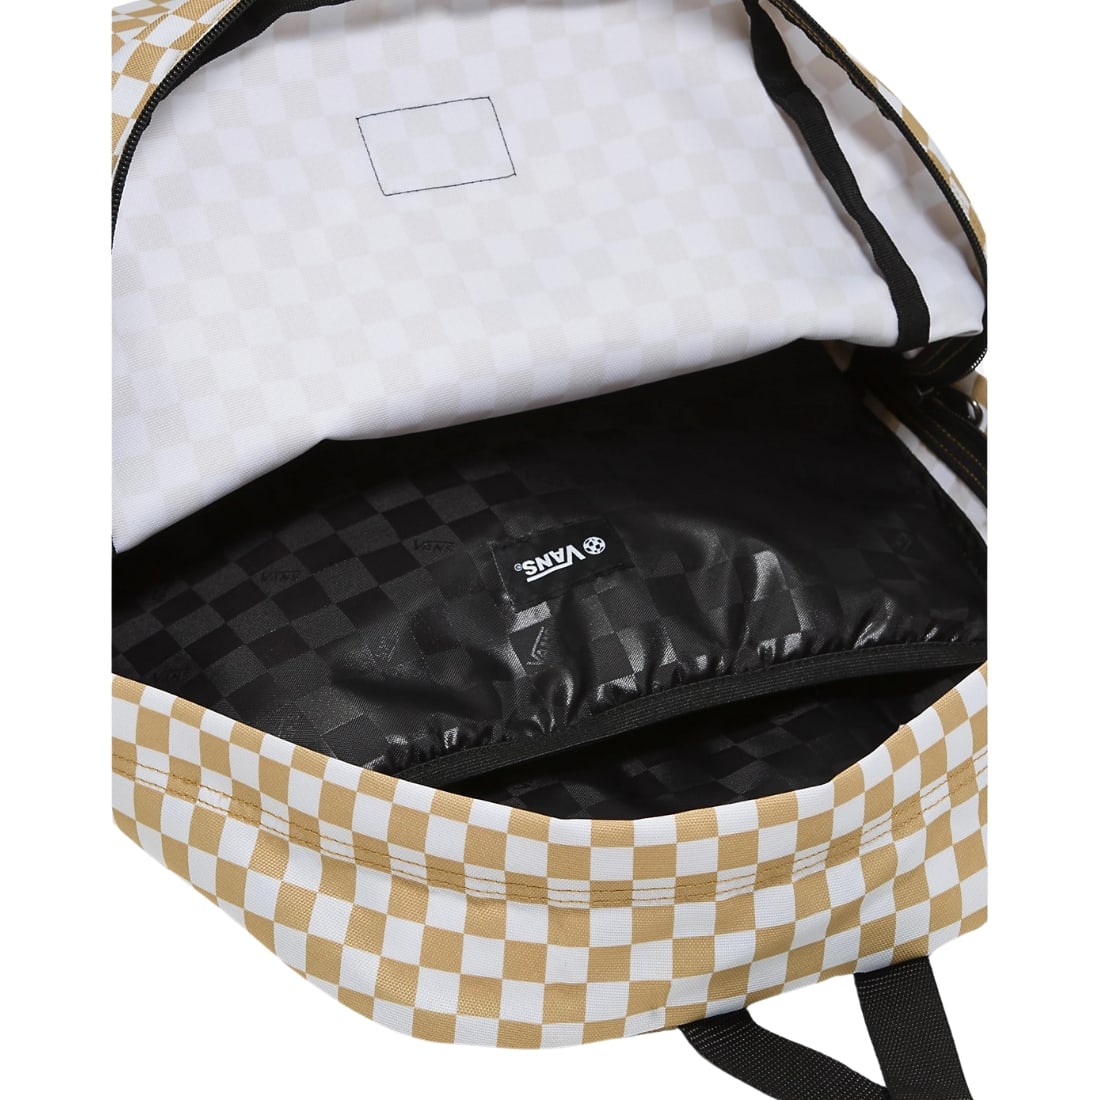 Vans Old Skool Check Backpack - Antelope Brown/White - Backpack by Vans One Size